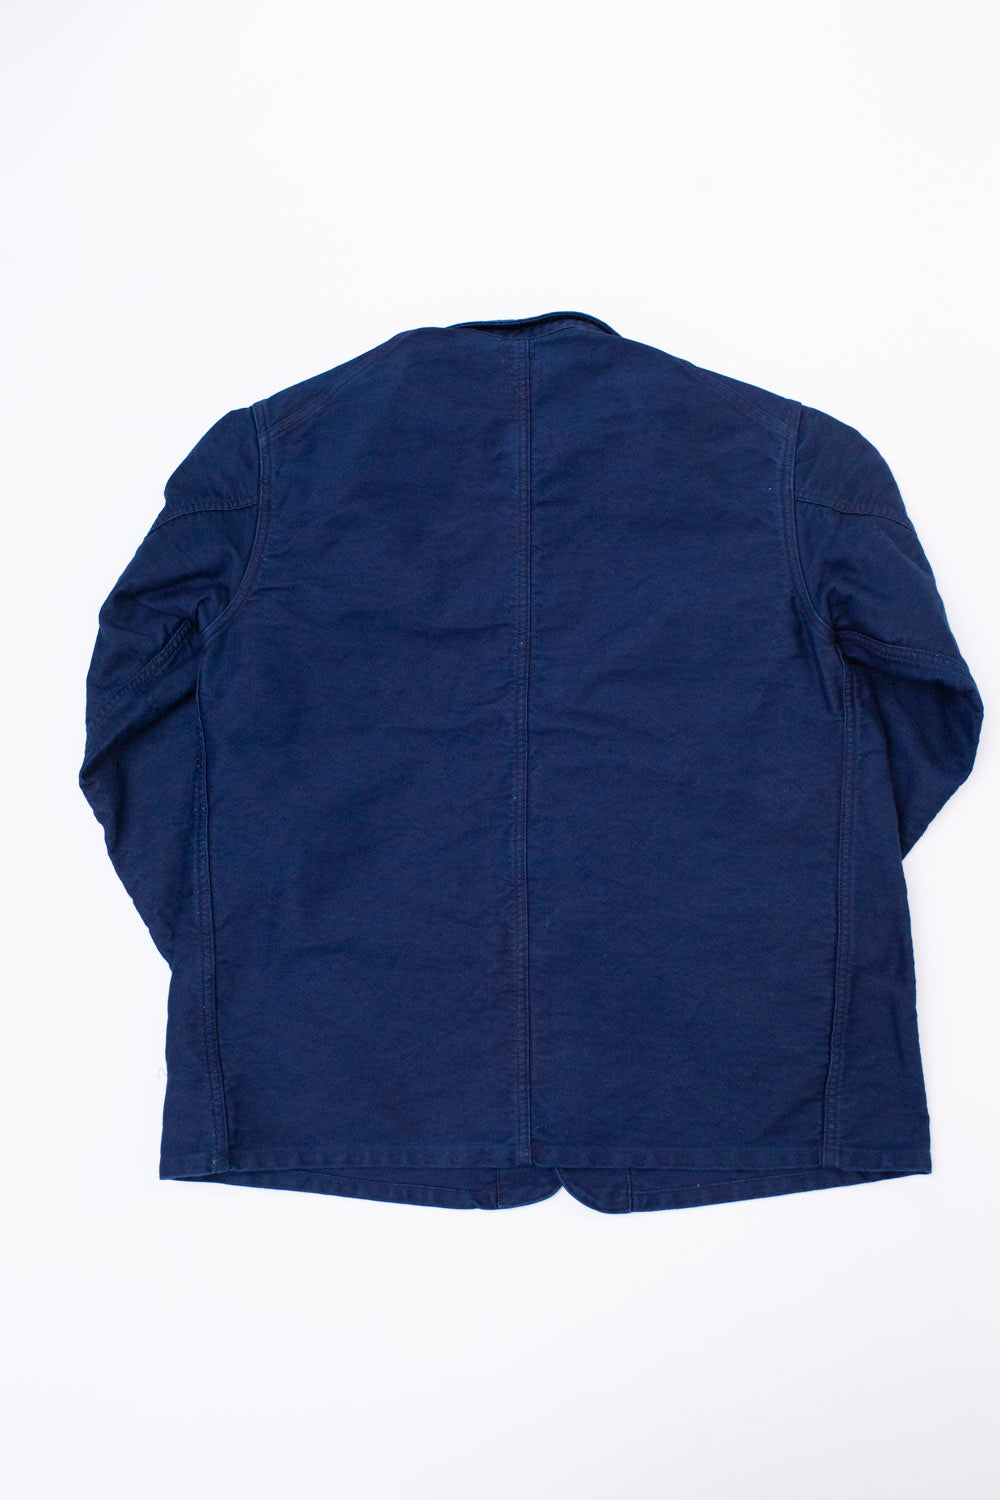 1101-MI - No. 1 Jacket Vintage Moleskin - Indigo